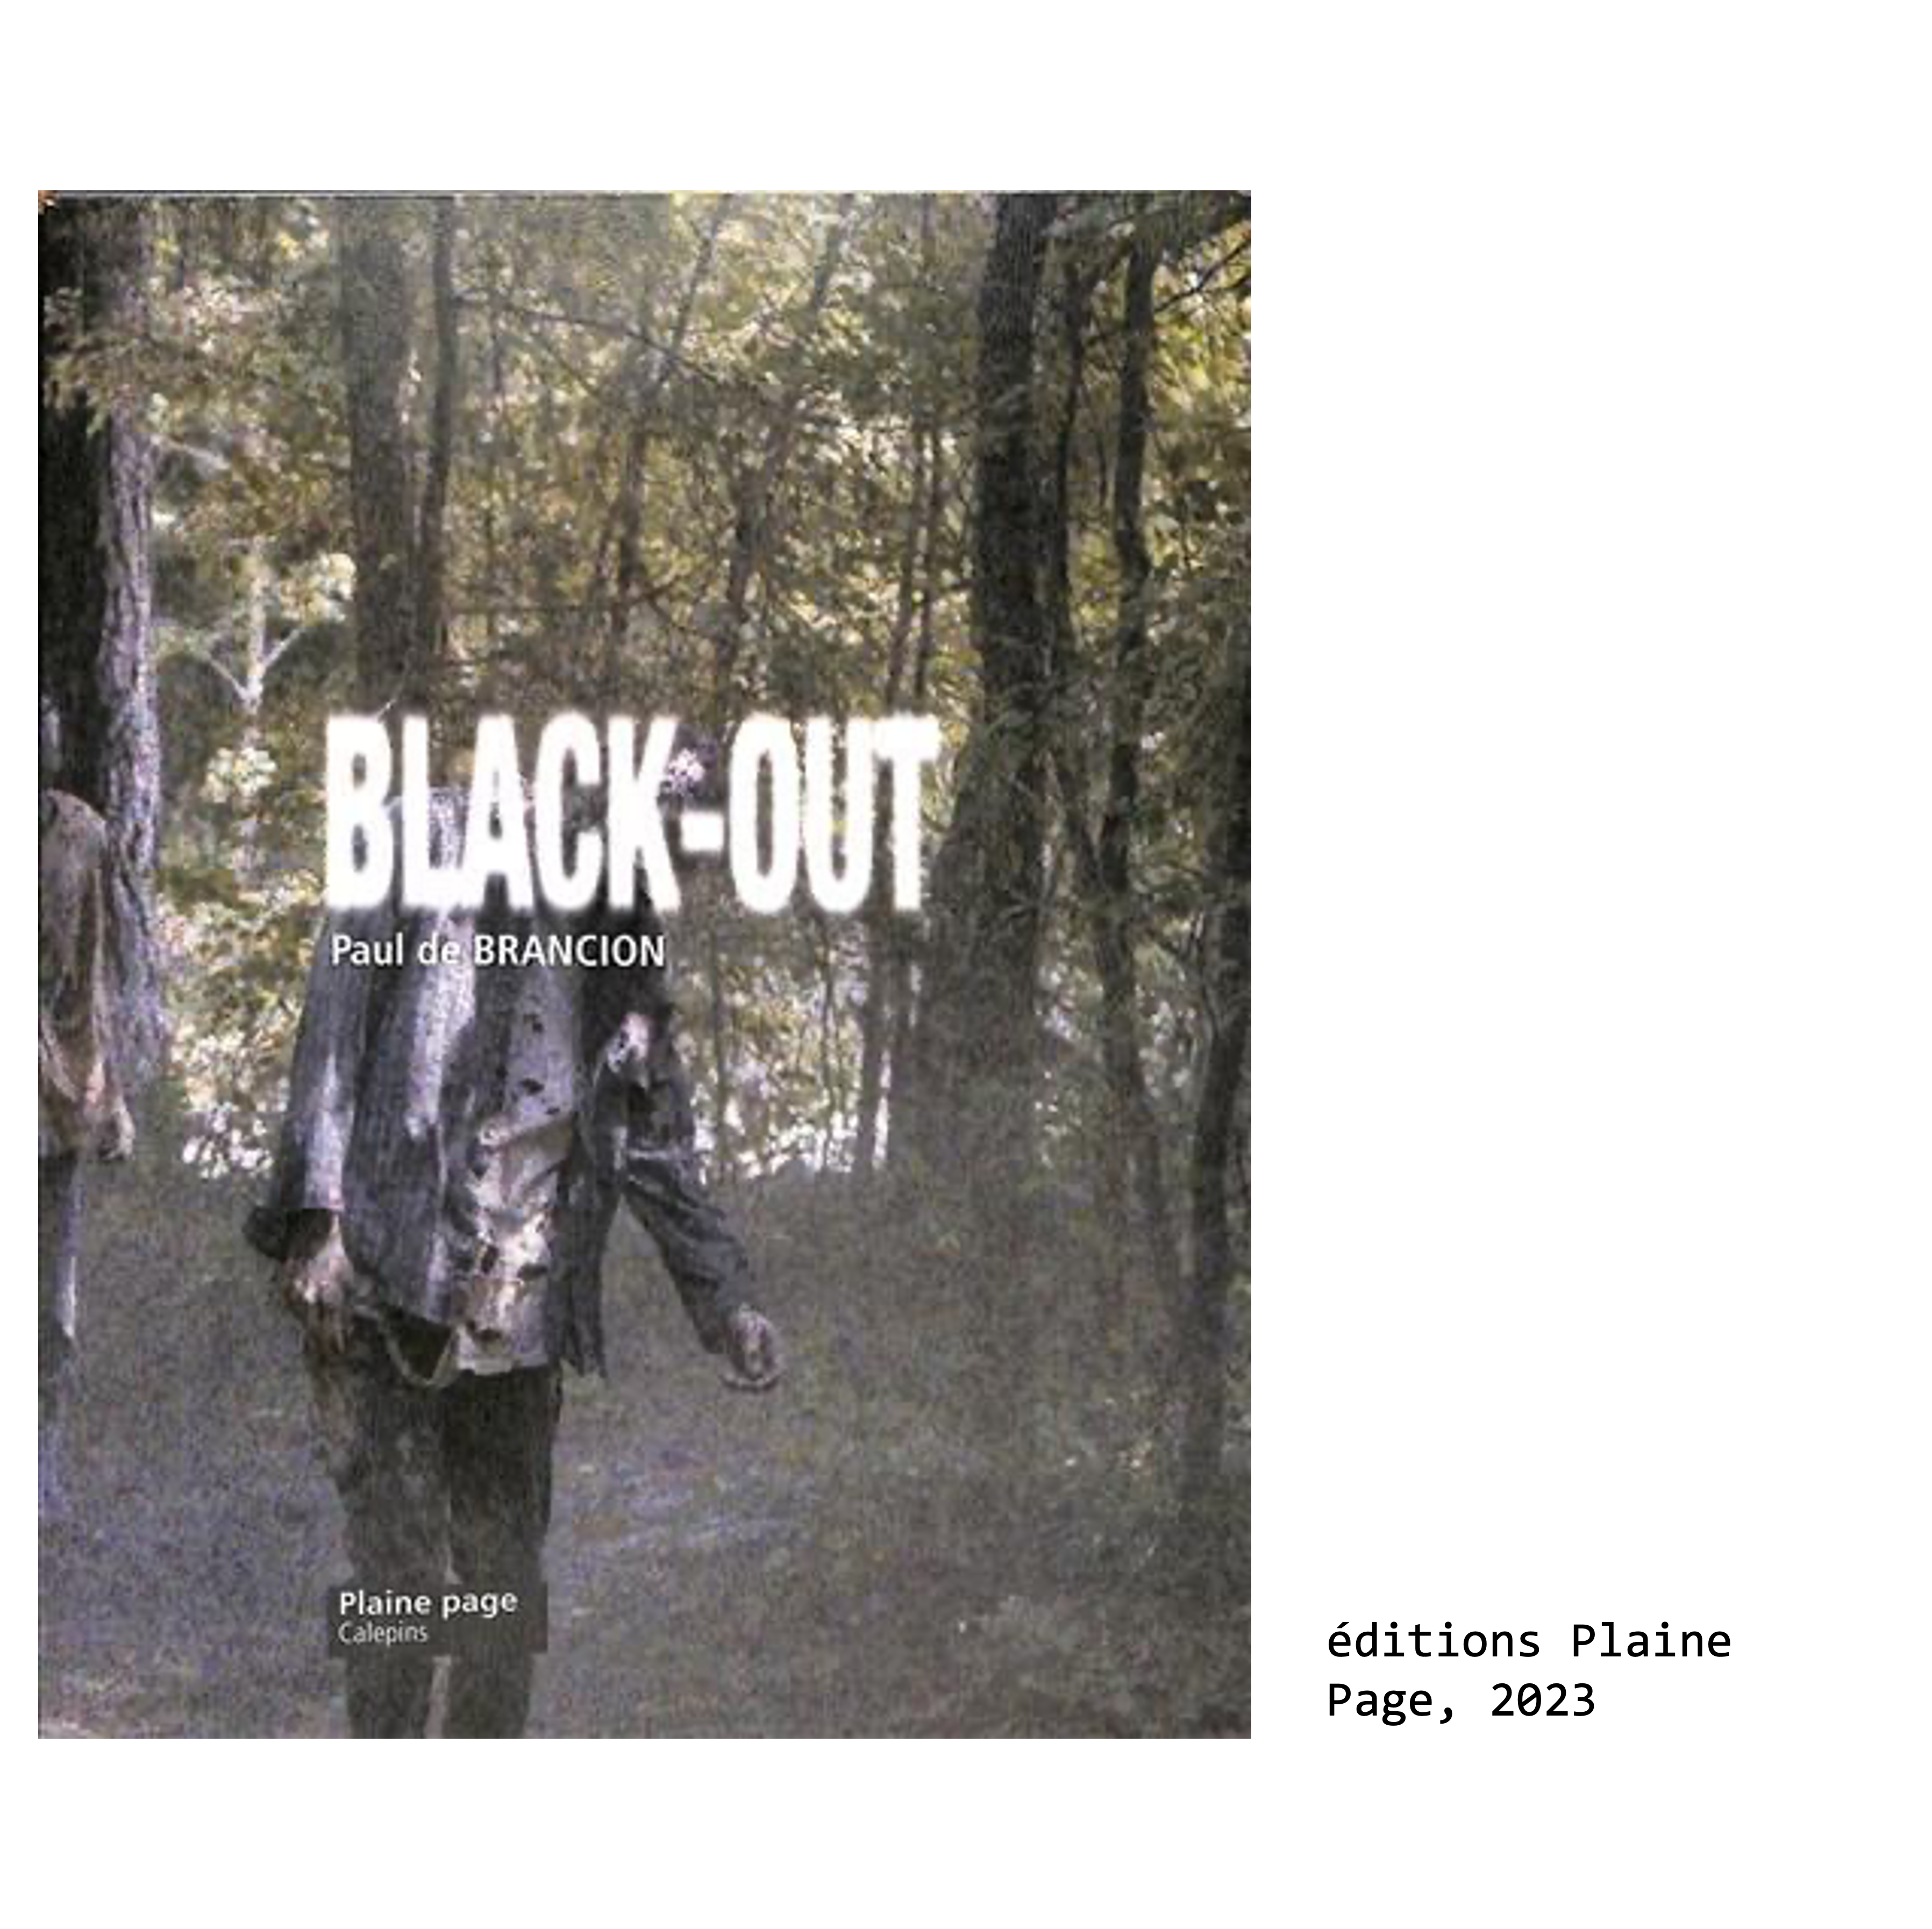 Couverture du livre de Paul de Brancion, écrivain et poète : Black Out, éditions Plaine Page, 2023